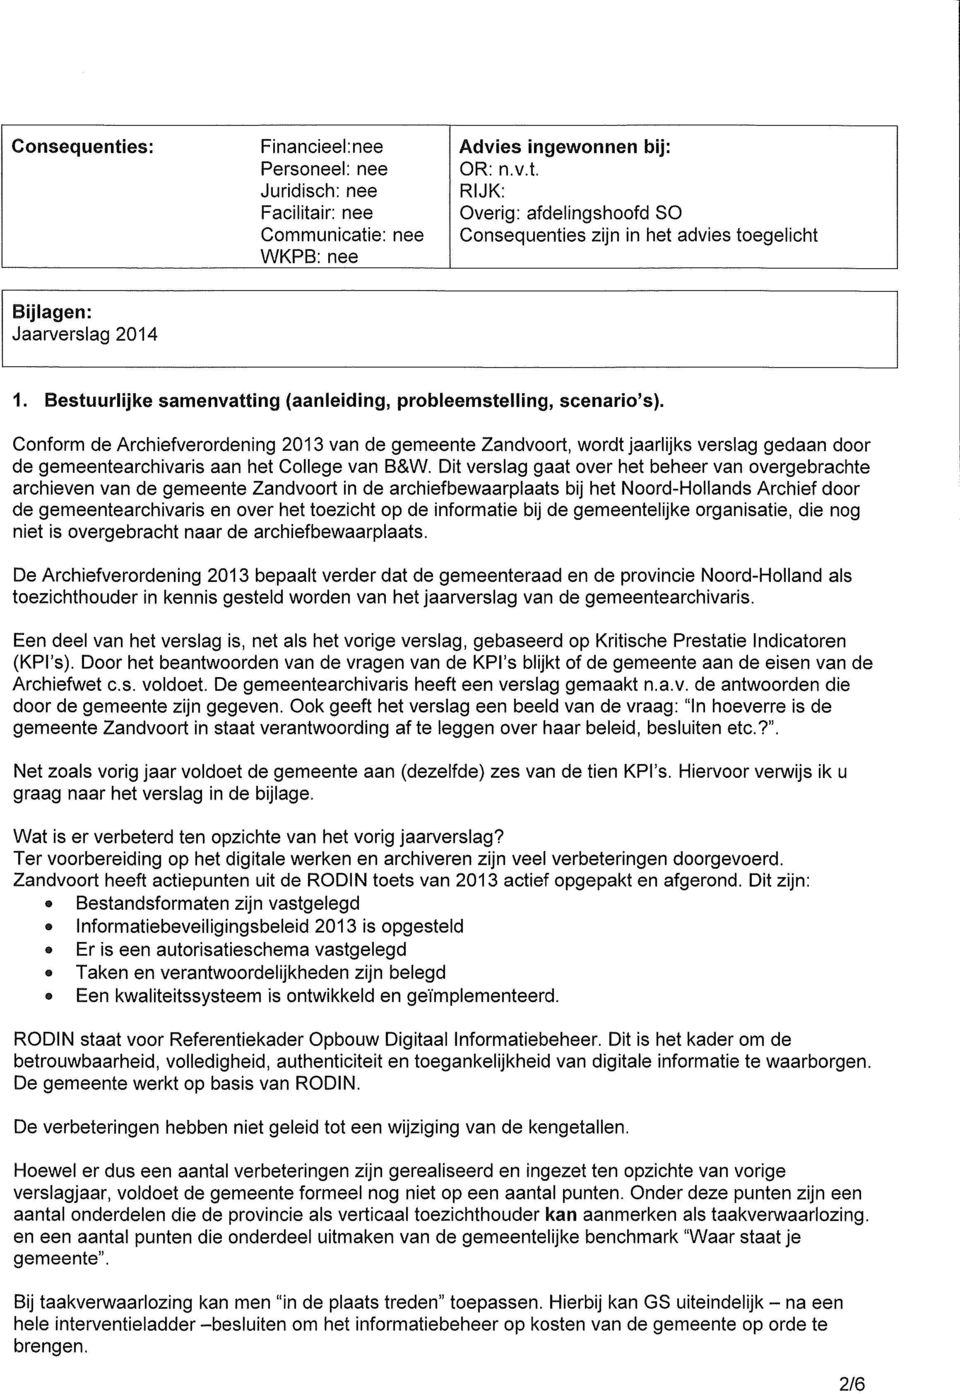 Conform de Archiefverordening 2013 van de gemeente Zandvoort, wordt jaarlijks verslag gedaan door de gemeentearchivaris aan het College van B&W.